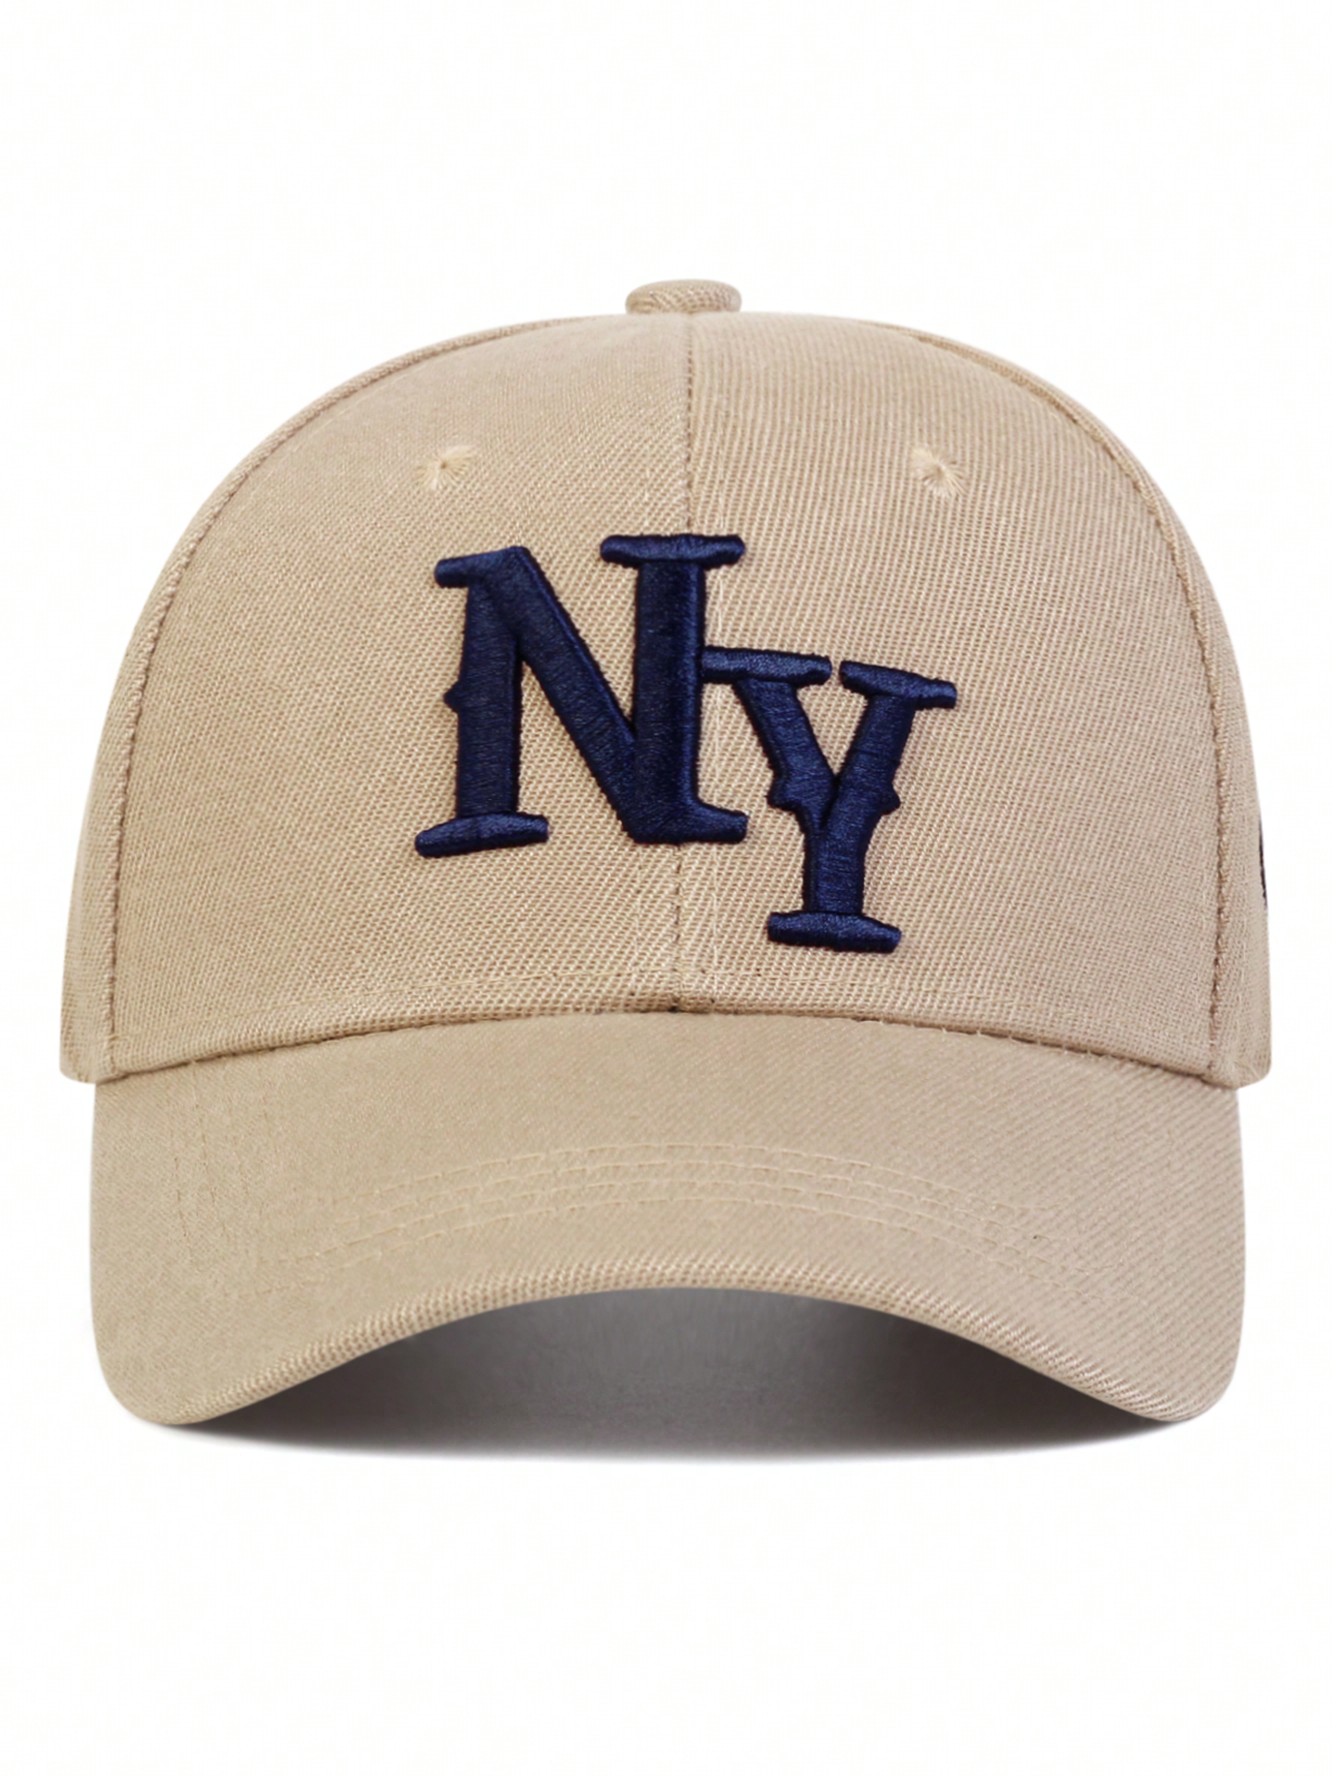 1 шт. мужская бейсболка с вышивкой букв «Нью-Йорк», хаки 1 шт мужская бейсболка с вышивкой букв нью йорк белый